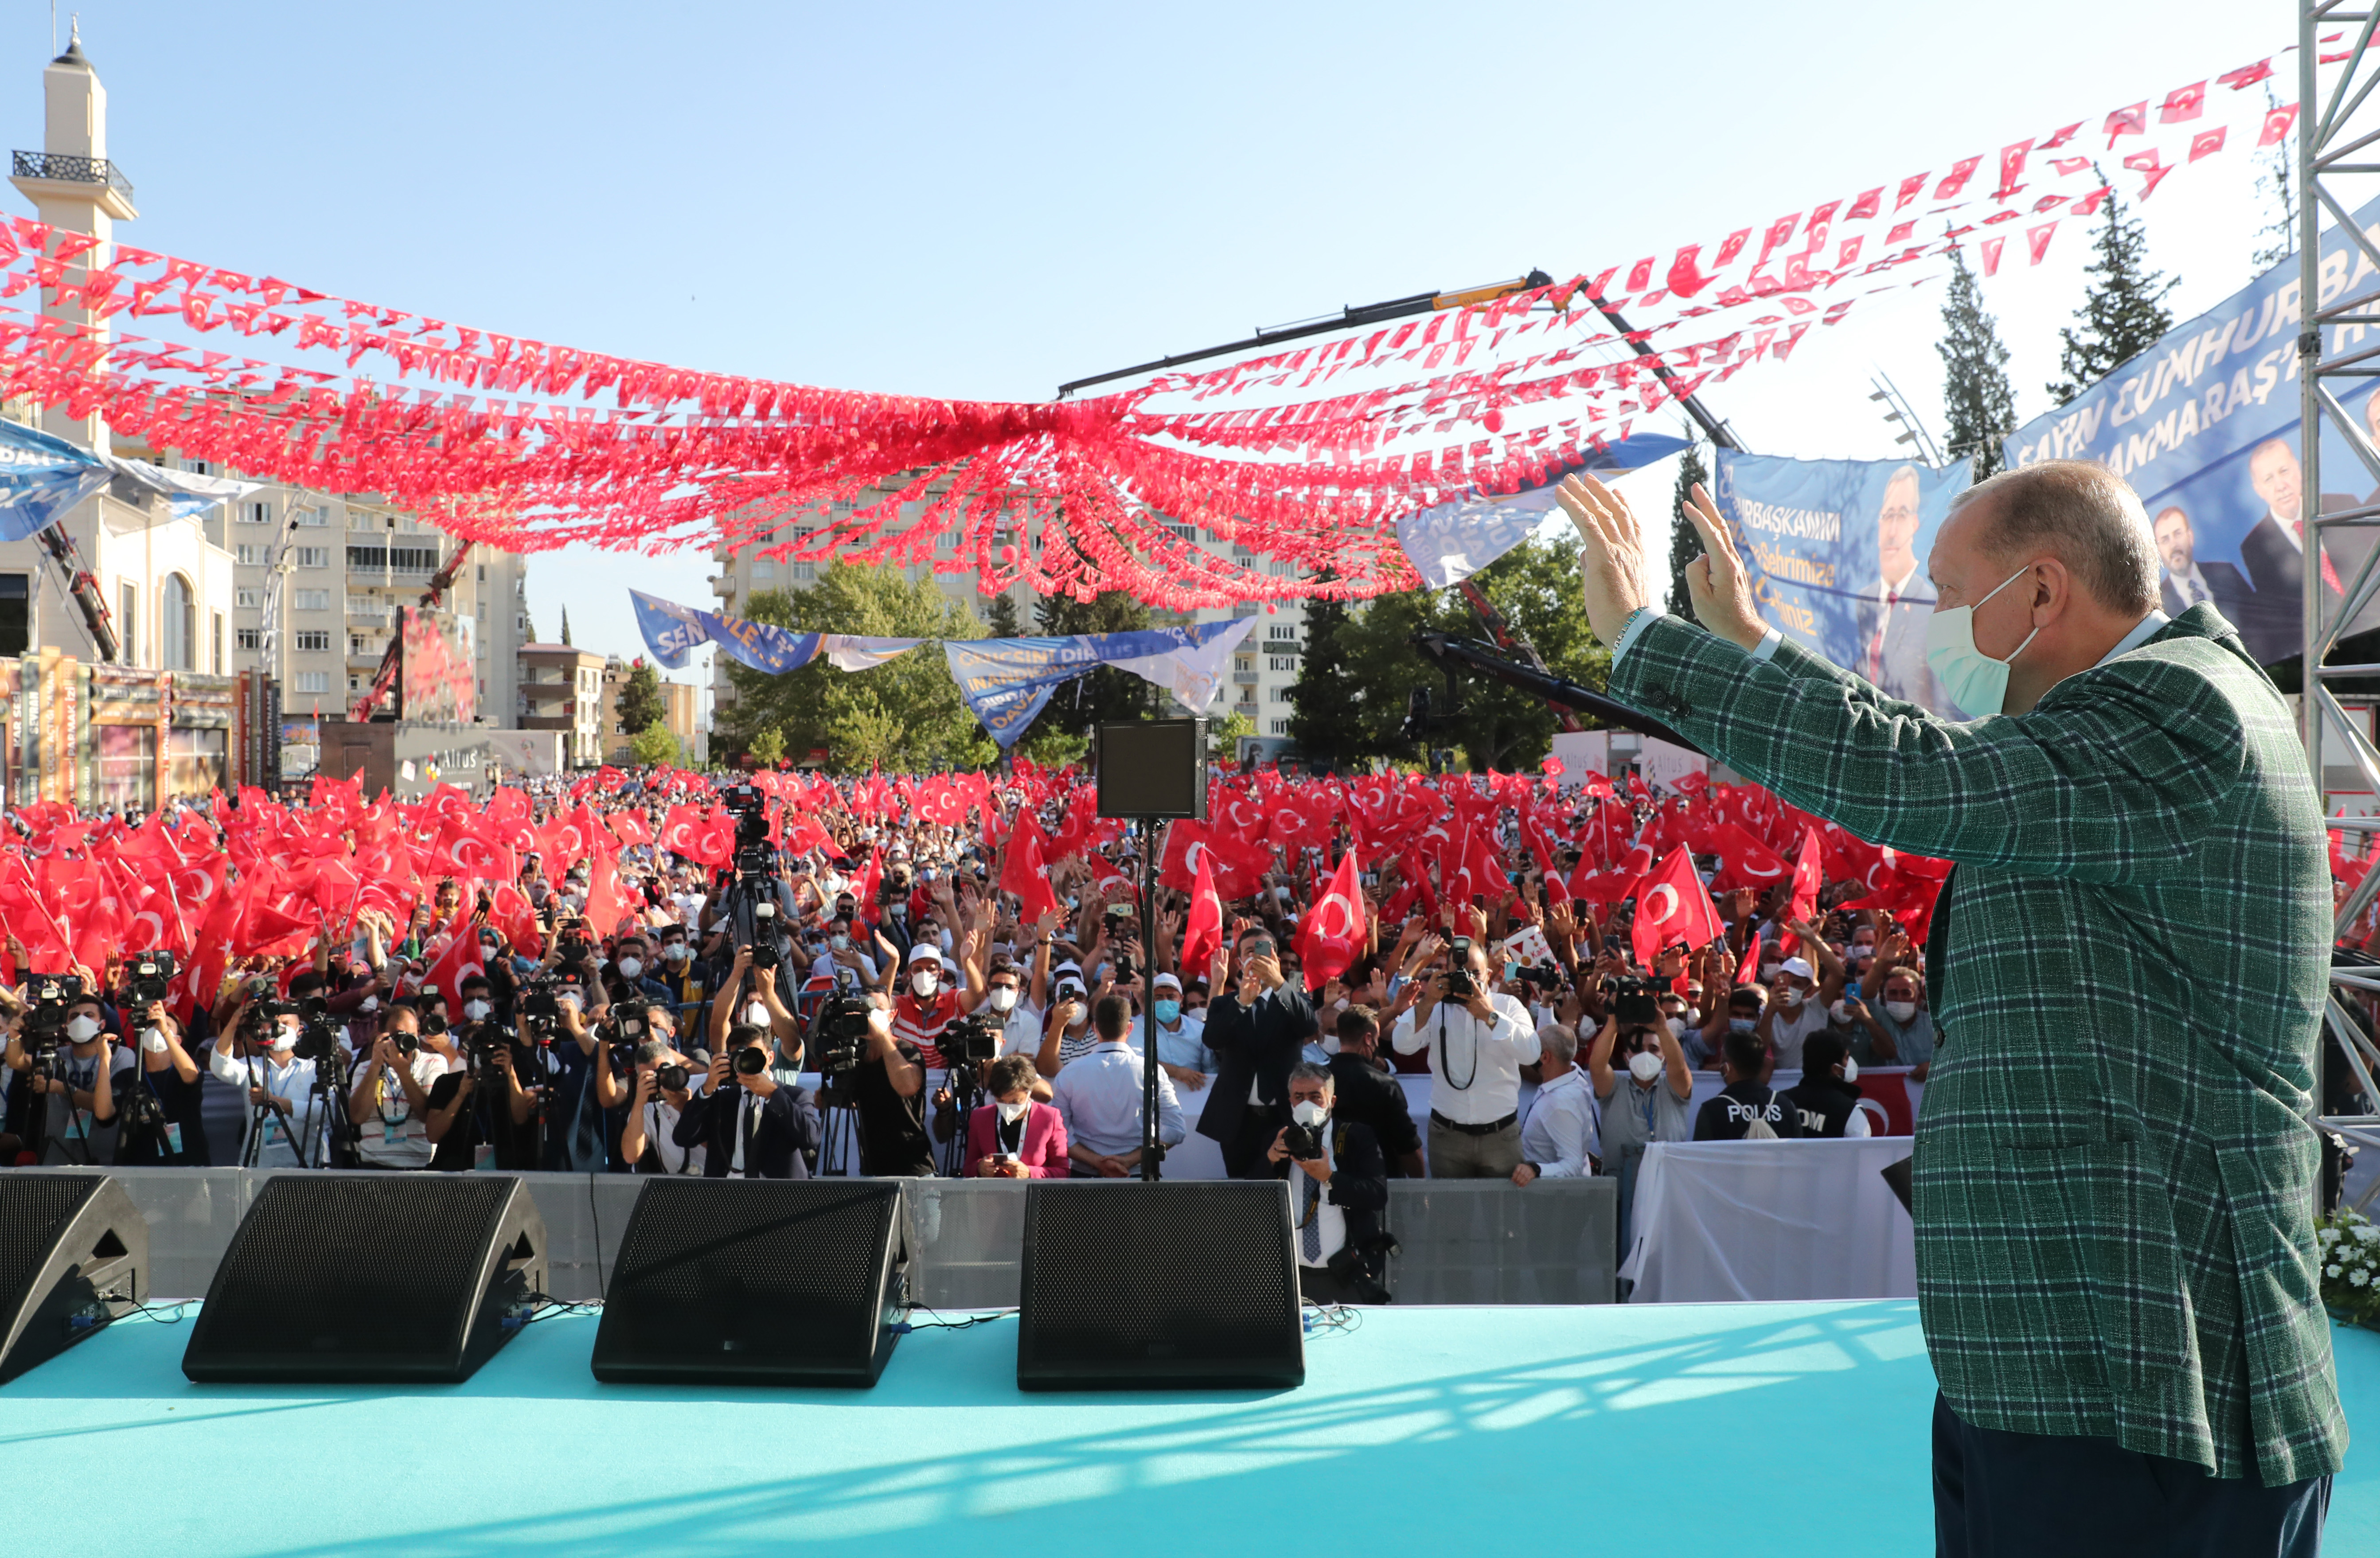 CHP Genel Lider Yardımcısı Öztunç, Erdoğan'ın Kahramanmaraş mitinginin fotoğrafını paylaştı: Gerçek bu